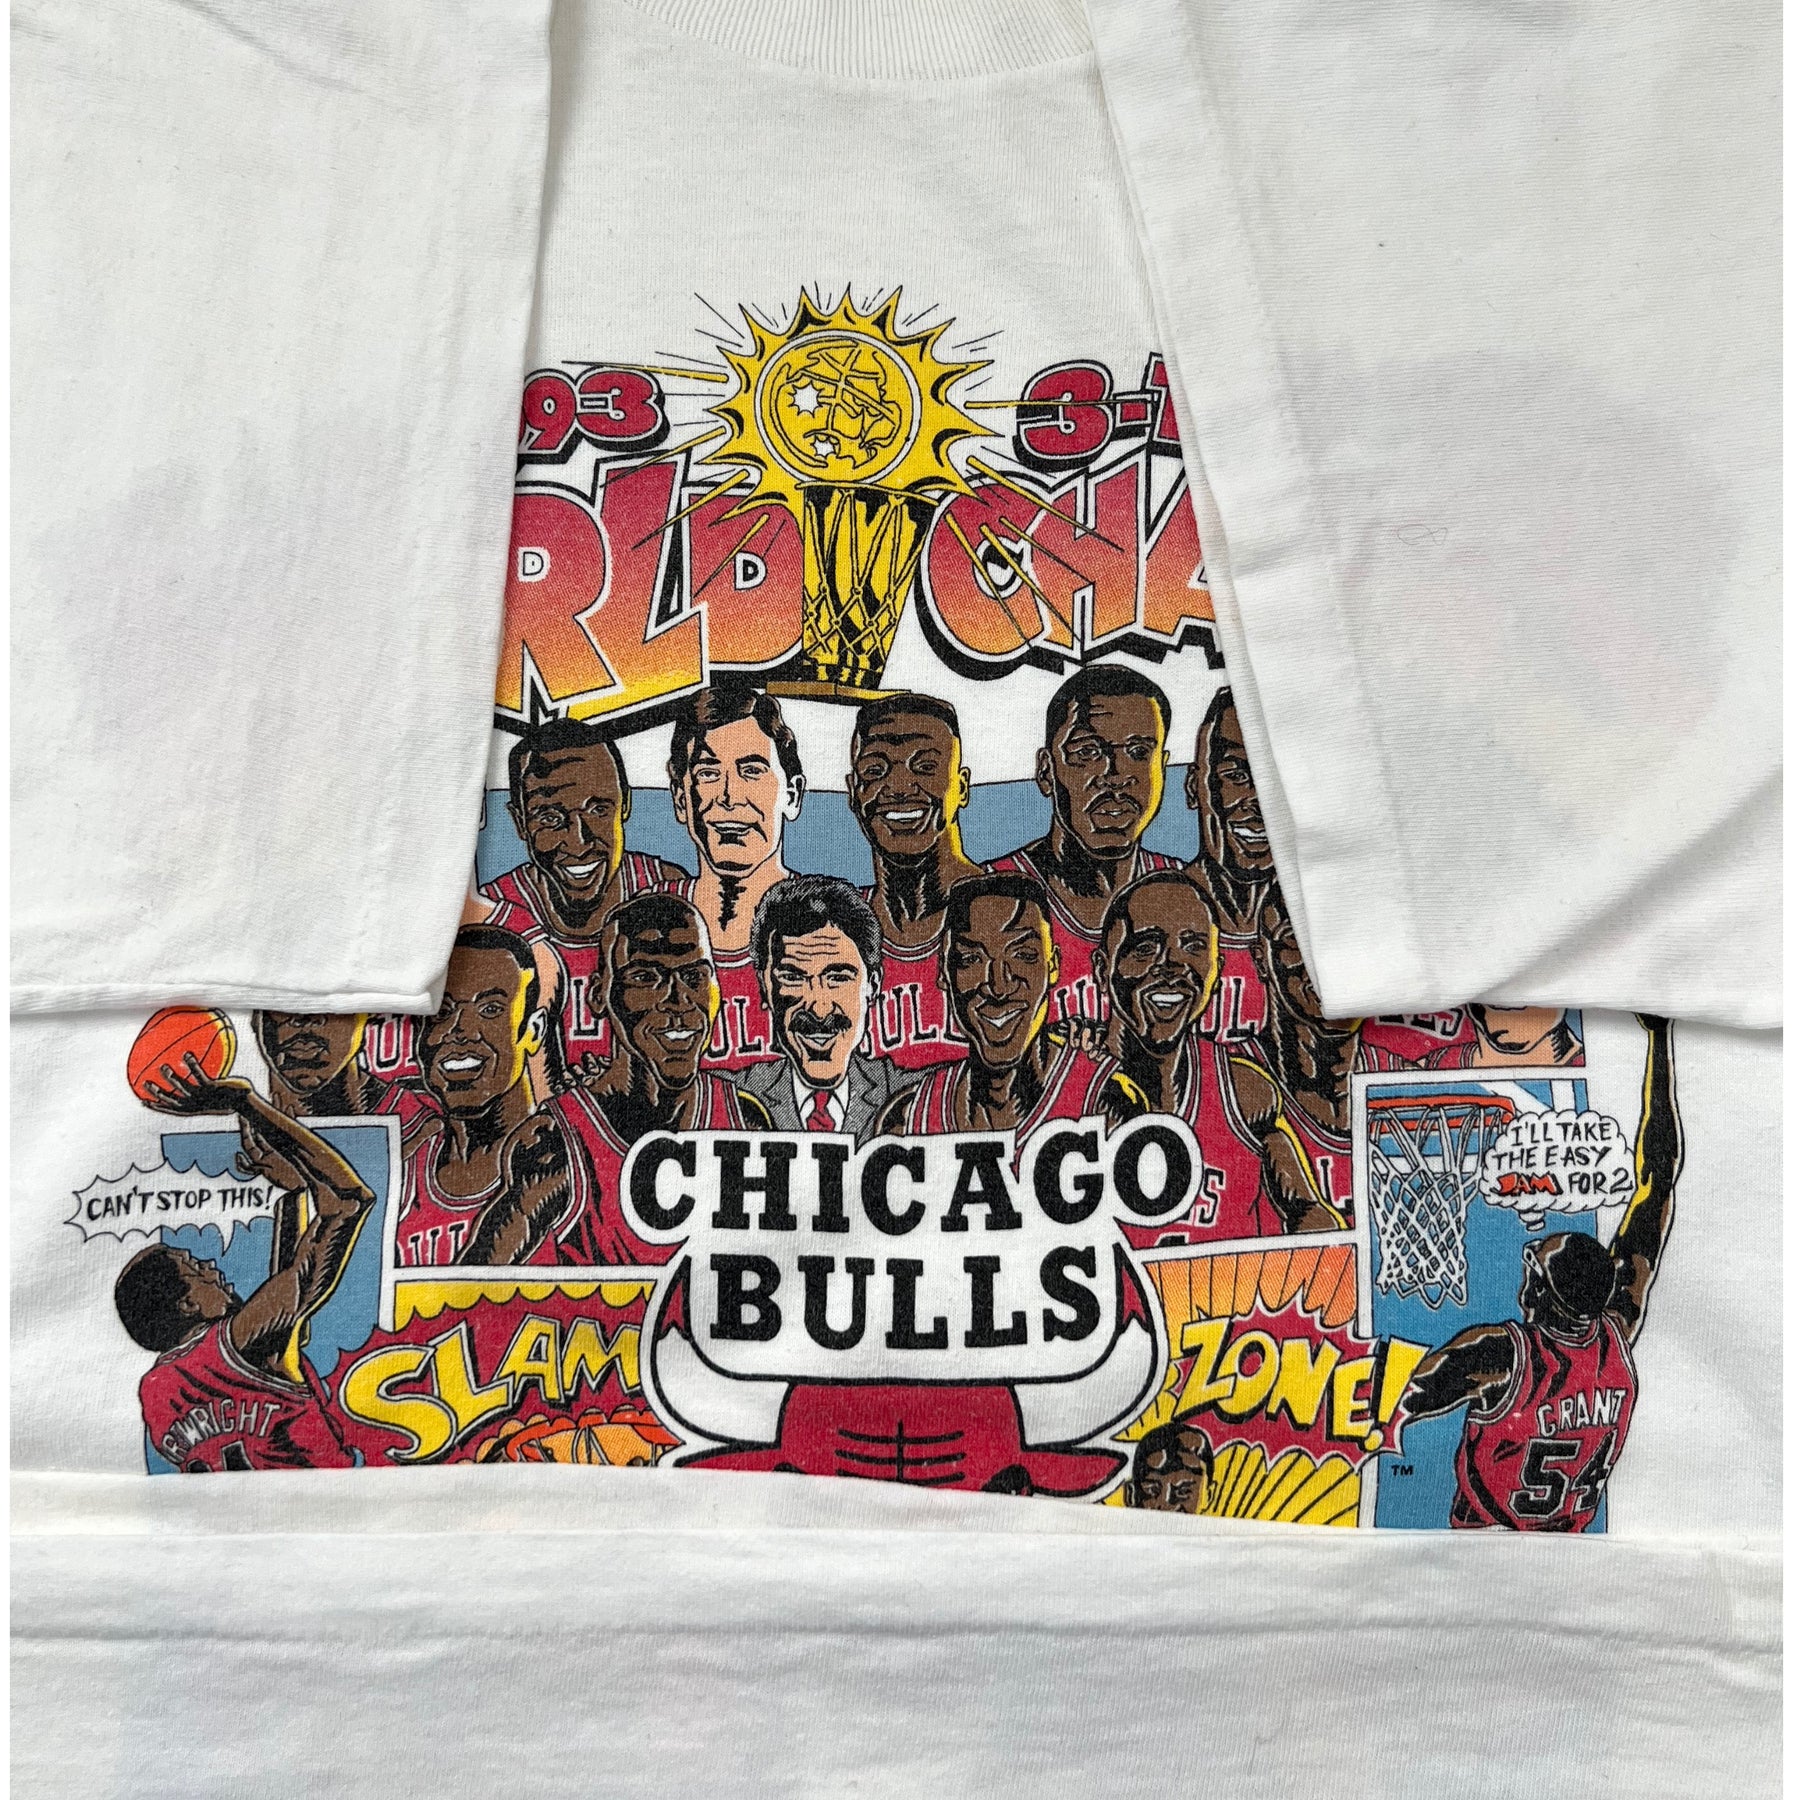 1993 bulls championship shirt